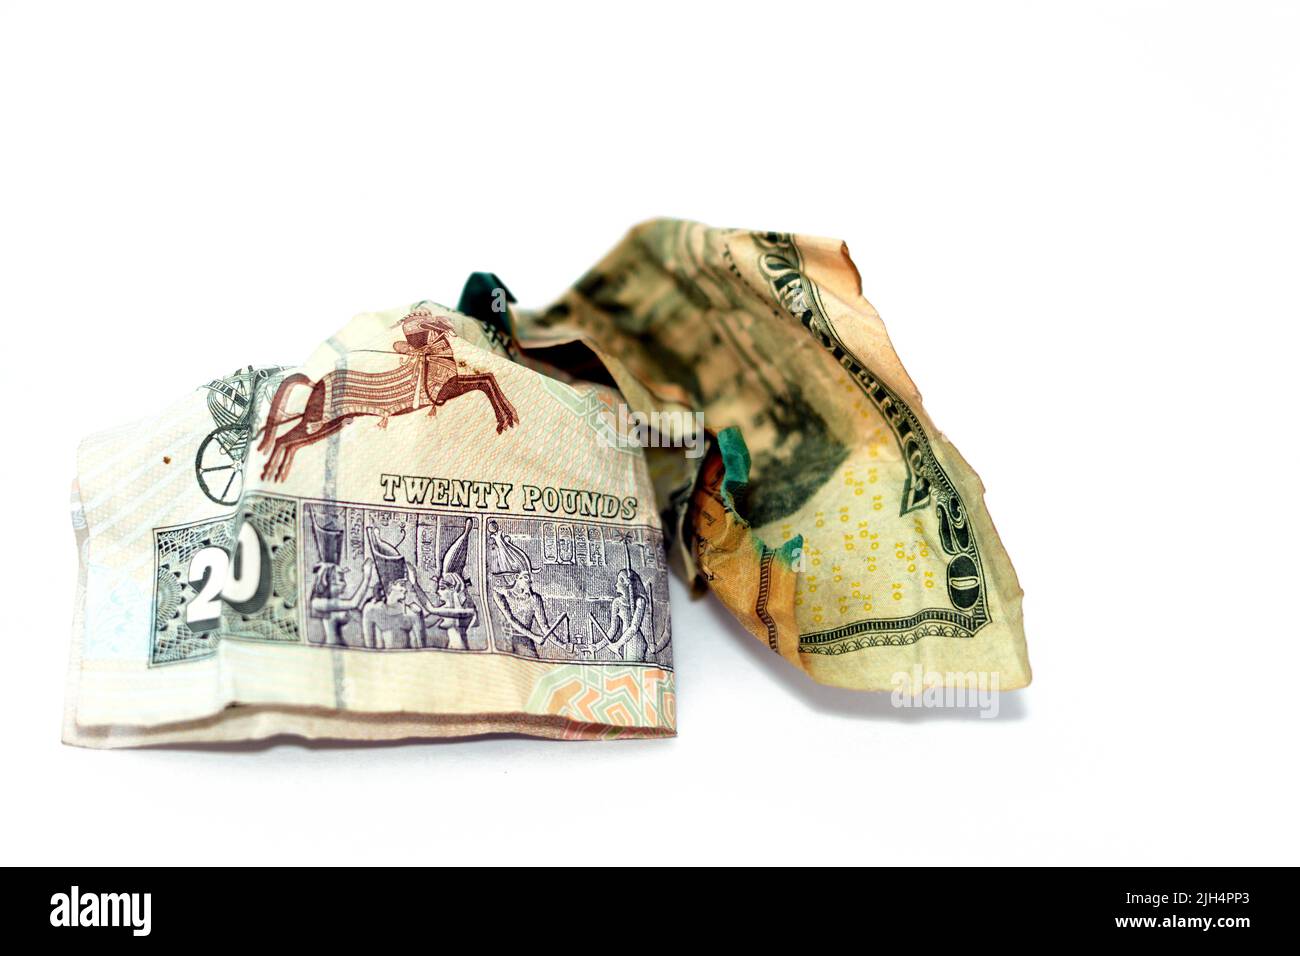 Crumpled rugged American money note di 20 $ venti dollari fattura e 20 LE venti egiziano banconote in contanti isolato su sfondo bianco, econom Foto Stock